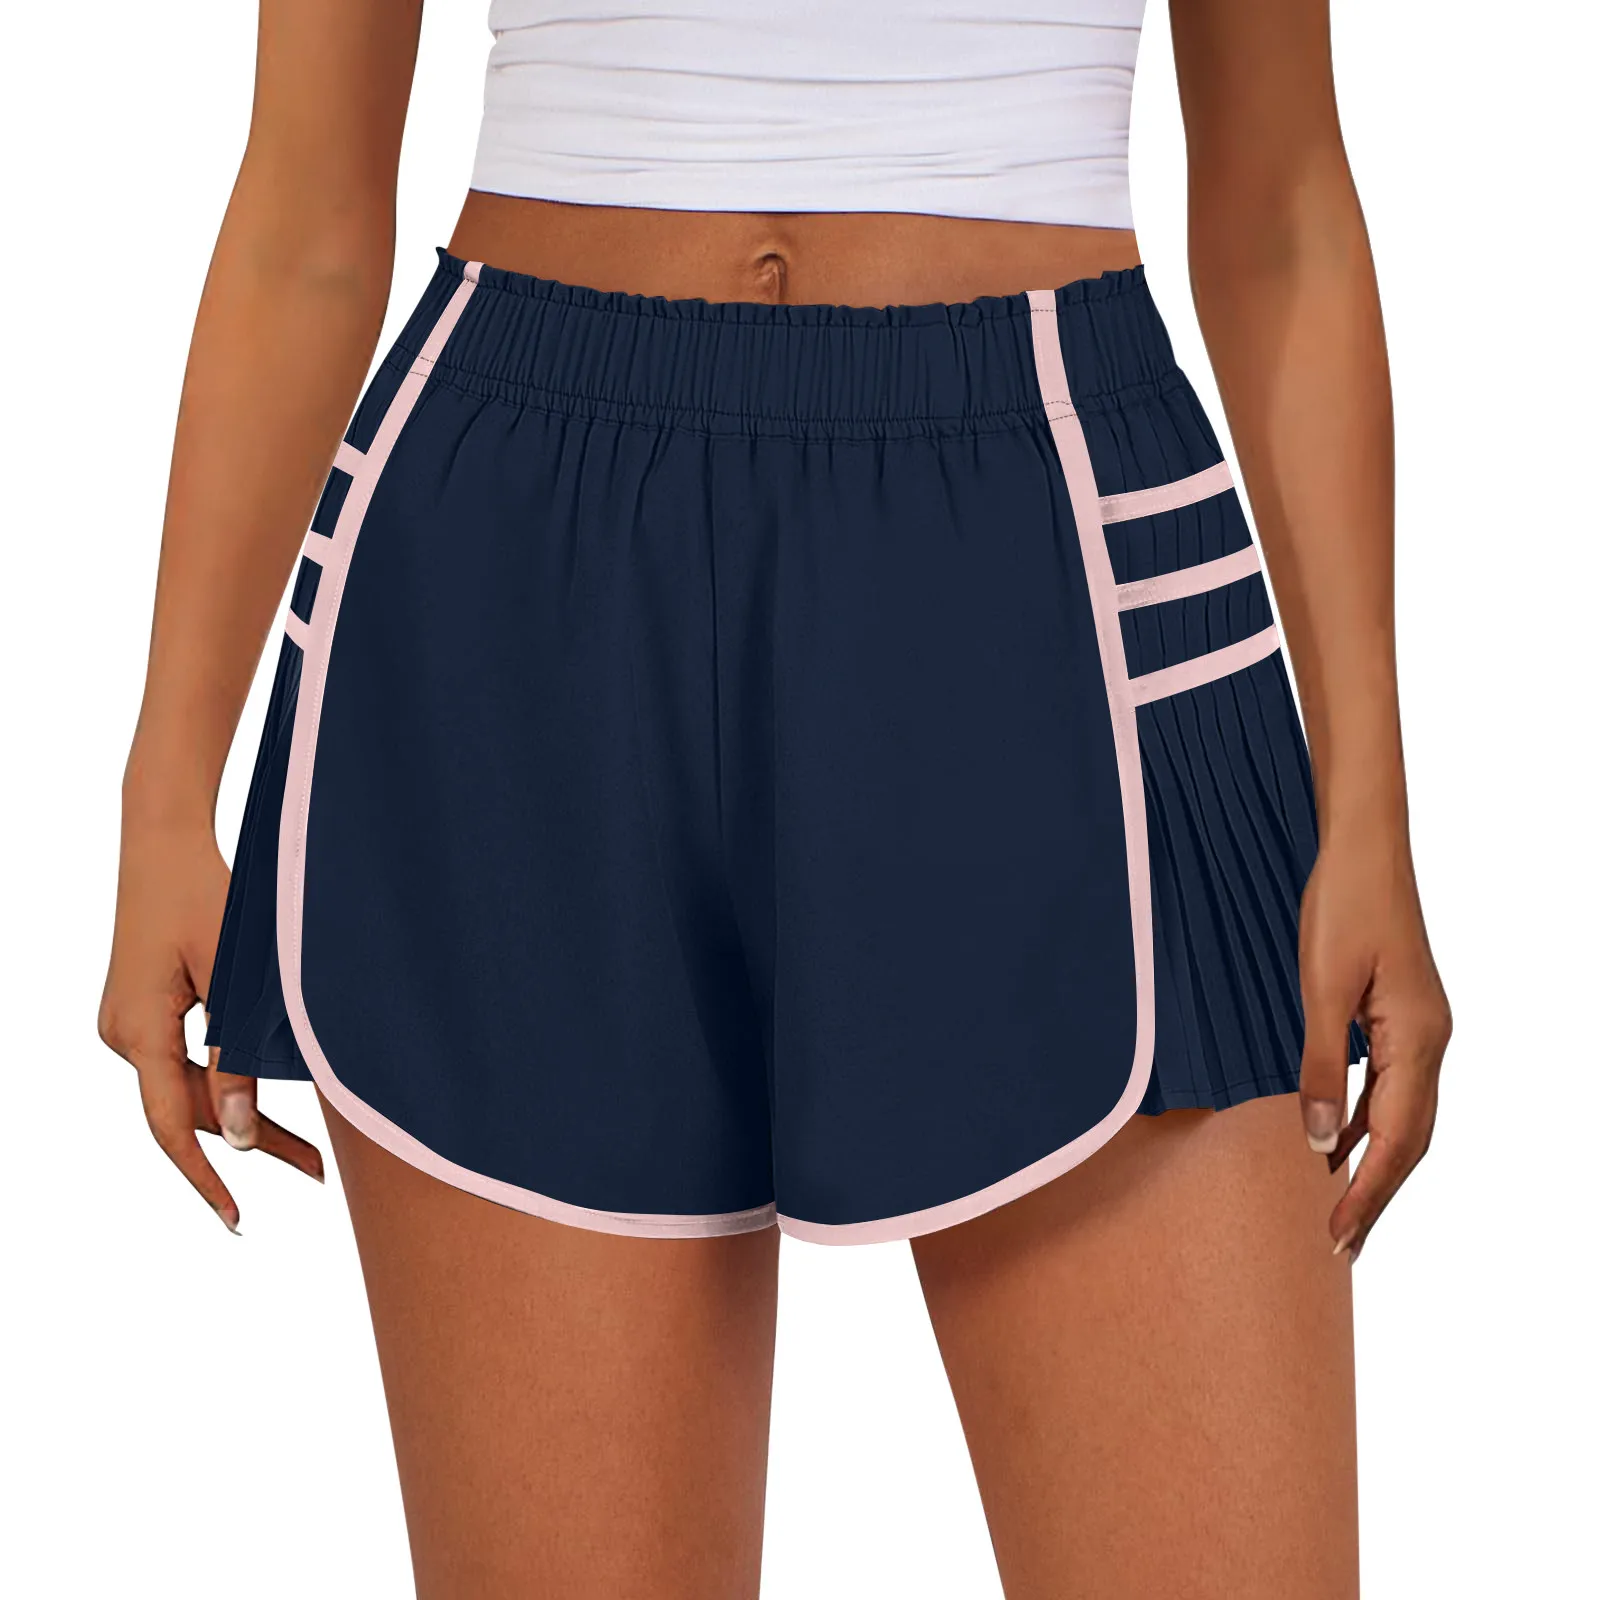 Celana pendek olahraga wanita, celana pendek tenis pinggang tinggi cepat kering untuk olahraga Gym lari musim panas